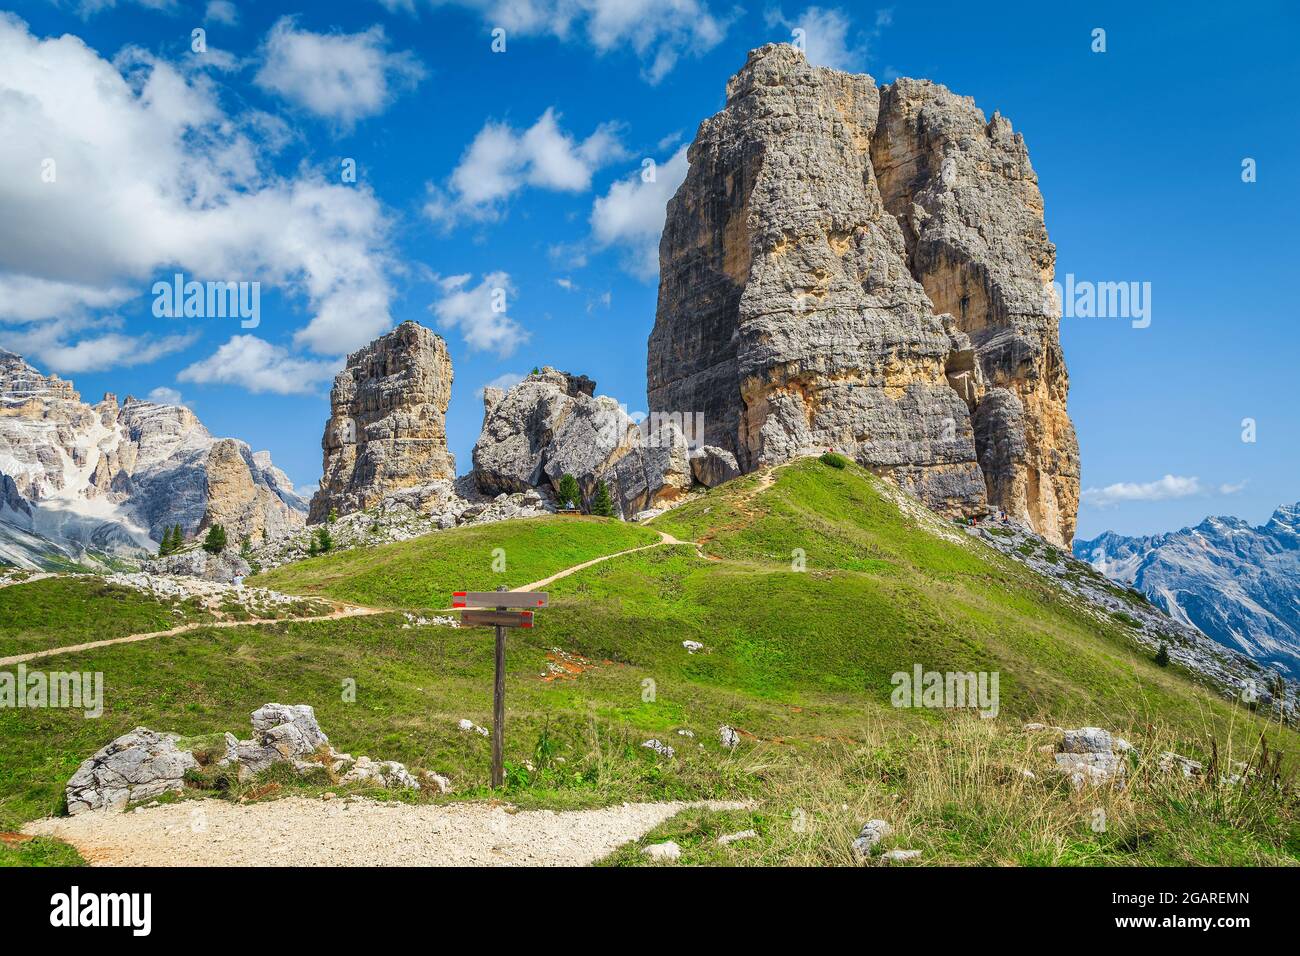 Bergkulisse mit majestätischen Cinque Torri Felsformationen. Hölzerne Wanderzeichen und Wegweiser in der Nähe von Wanderwegen, Dolomiten, Italien, Europ Stockfoto